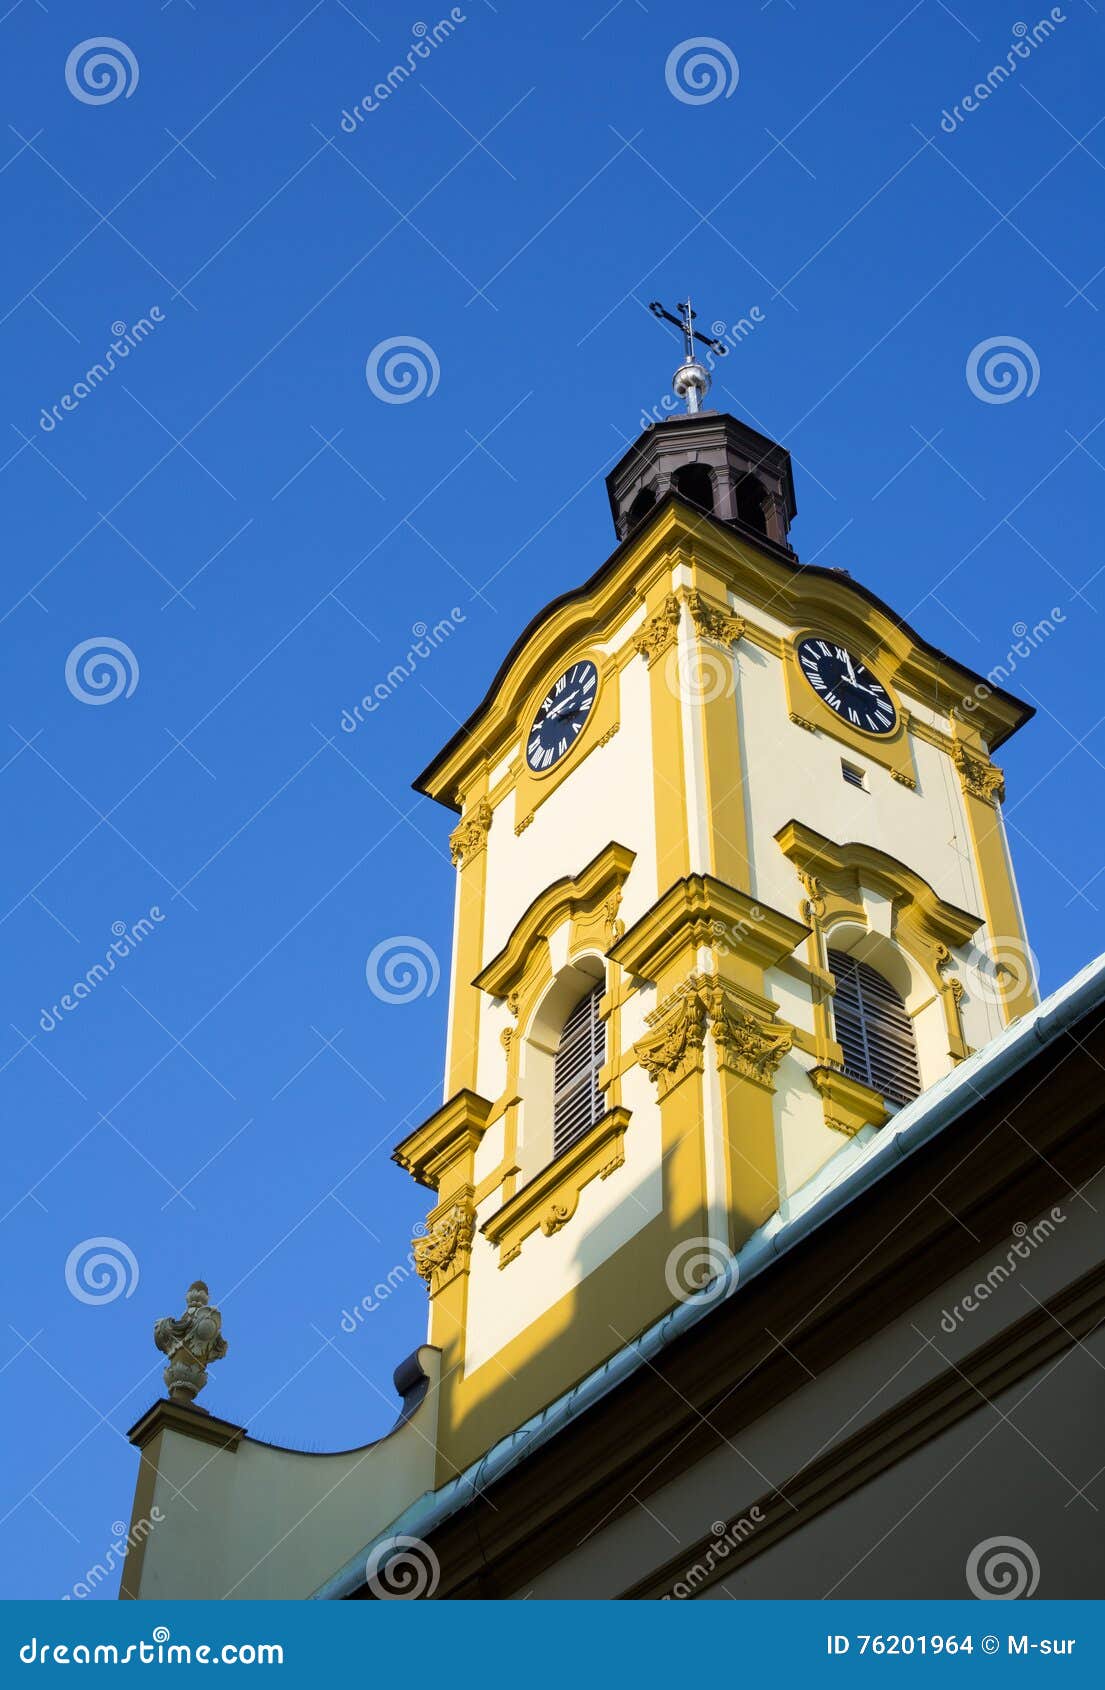 church of holy cross, cieszyn, poland